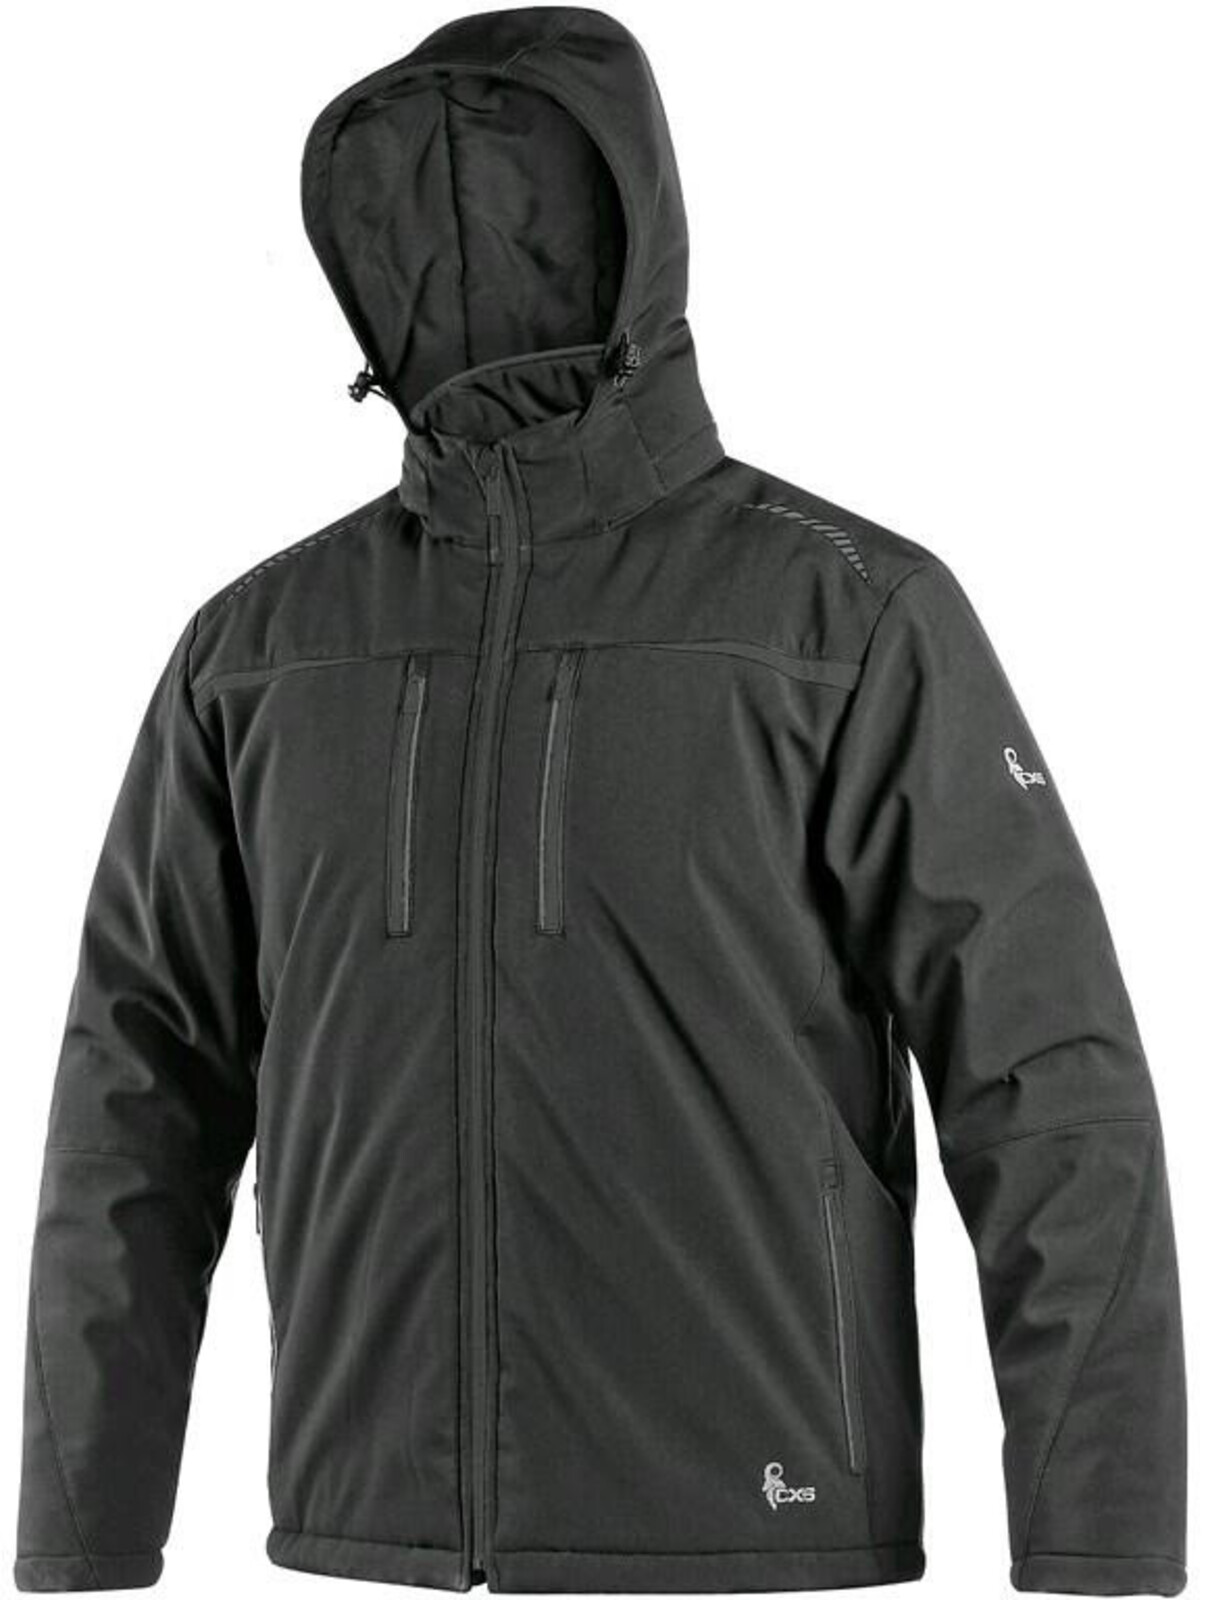 Pánska zateplená softshellová bunda CXS Norfolk - veľkosť: S, farba: čierna